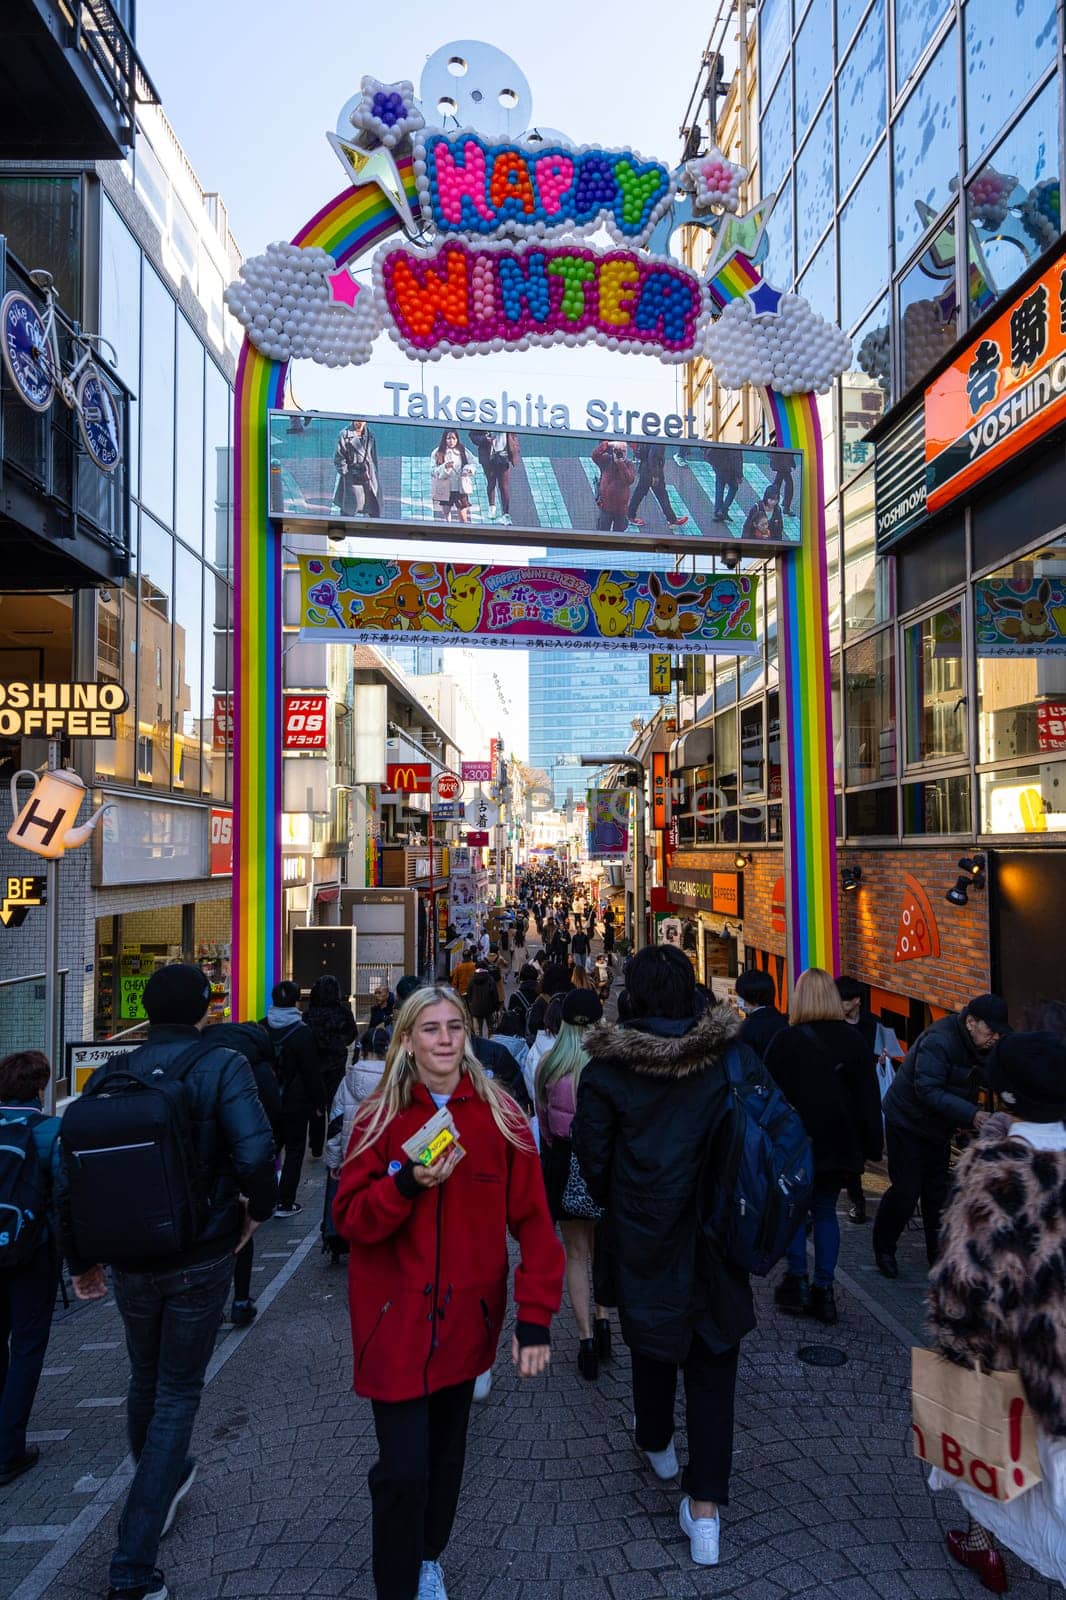 Takeshita Street in Tokyo, Japan by sergiodv